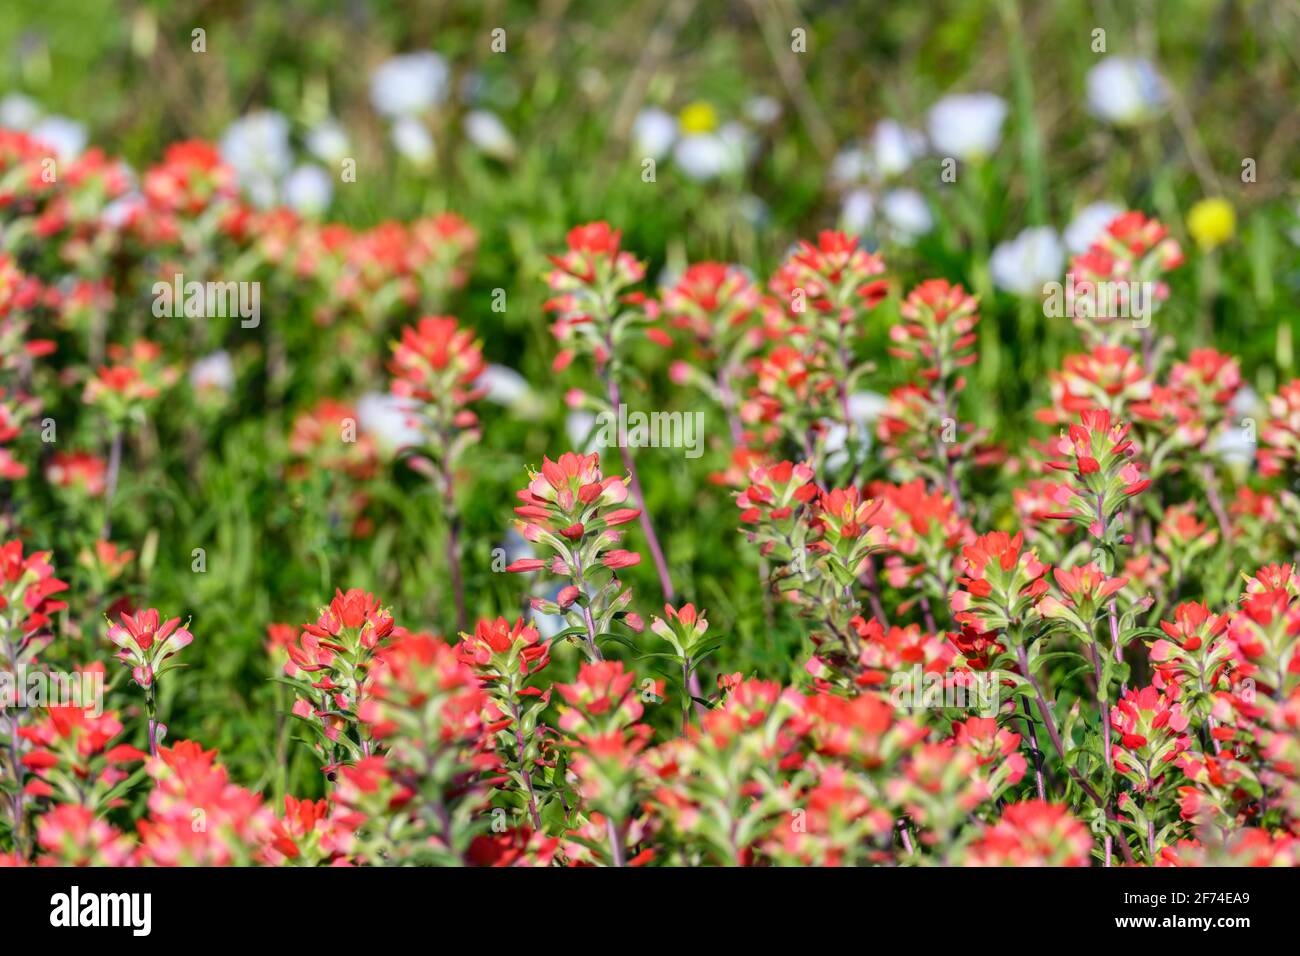 Texas Paintbrush (Castilleja indivisa) in full bloom. Houston, Texas, USA. Stock Photo